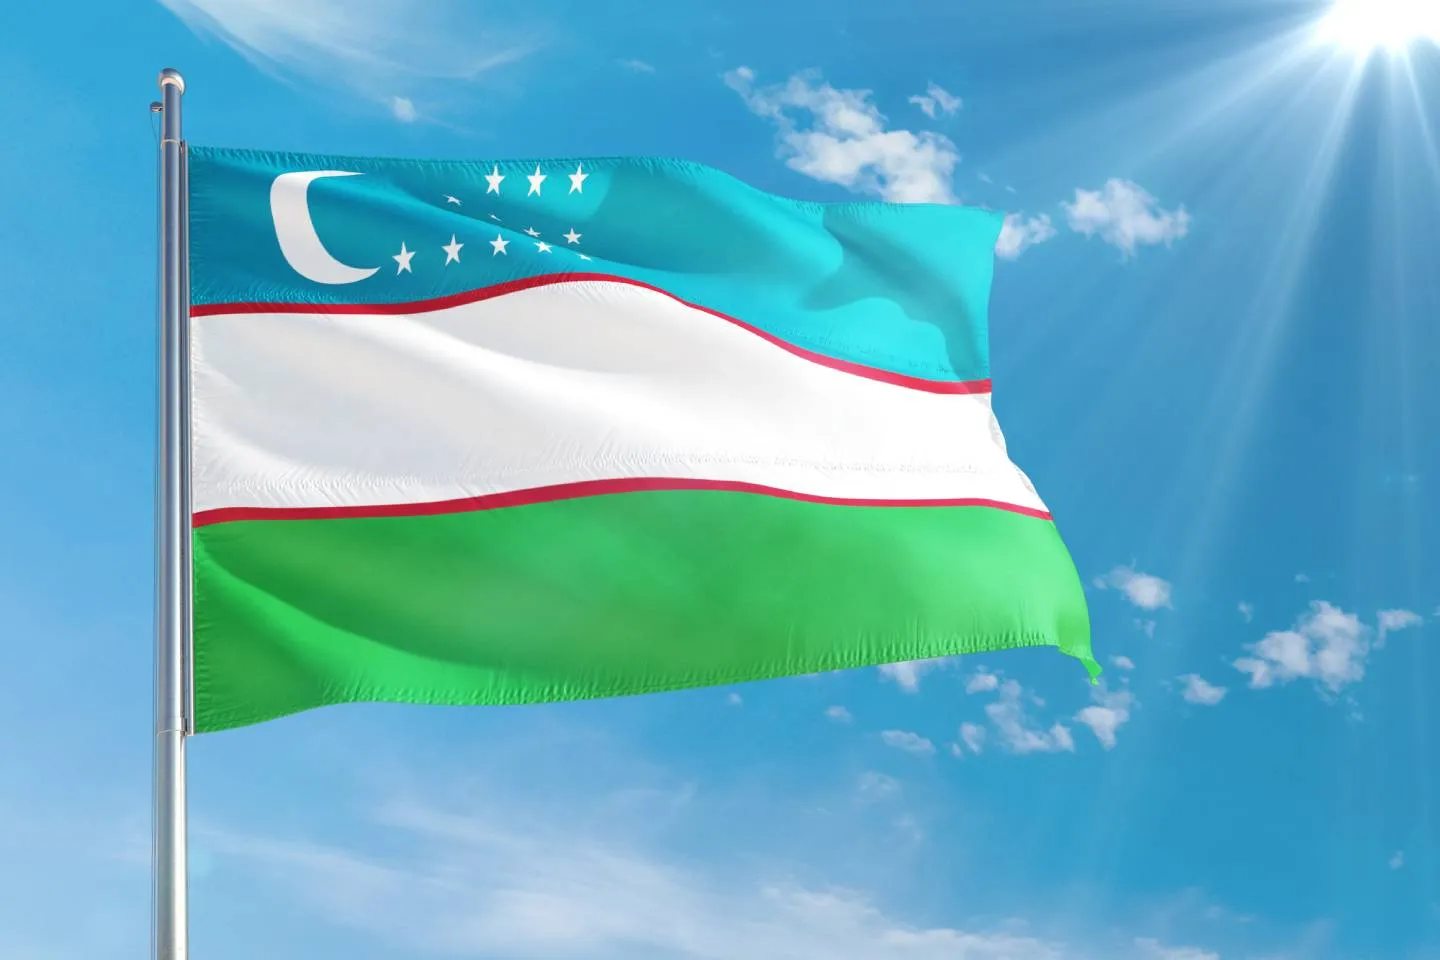 Новости мира / Политика в мире / Власти Узбекистана запретят пропаганду многоженства и закрывающую лицо одежду